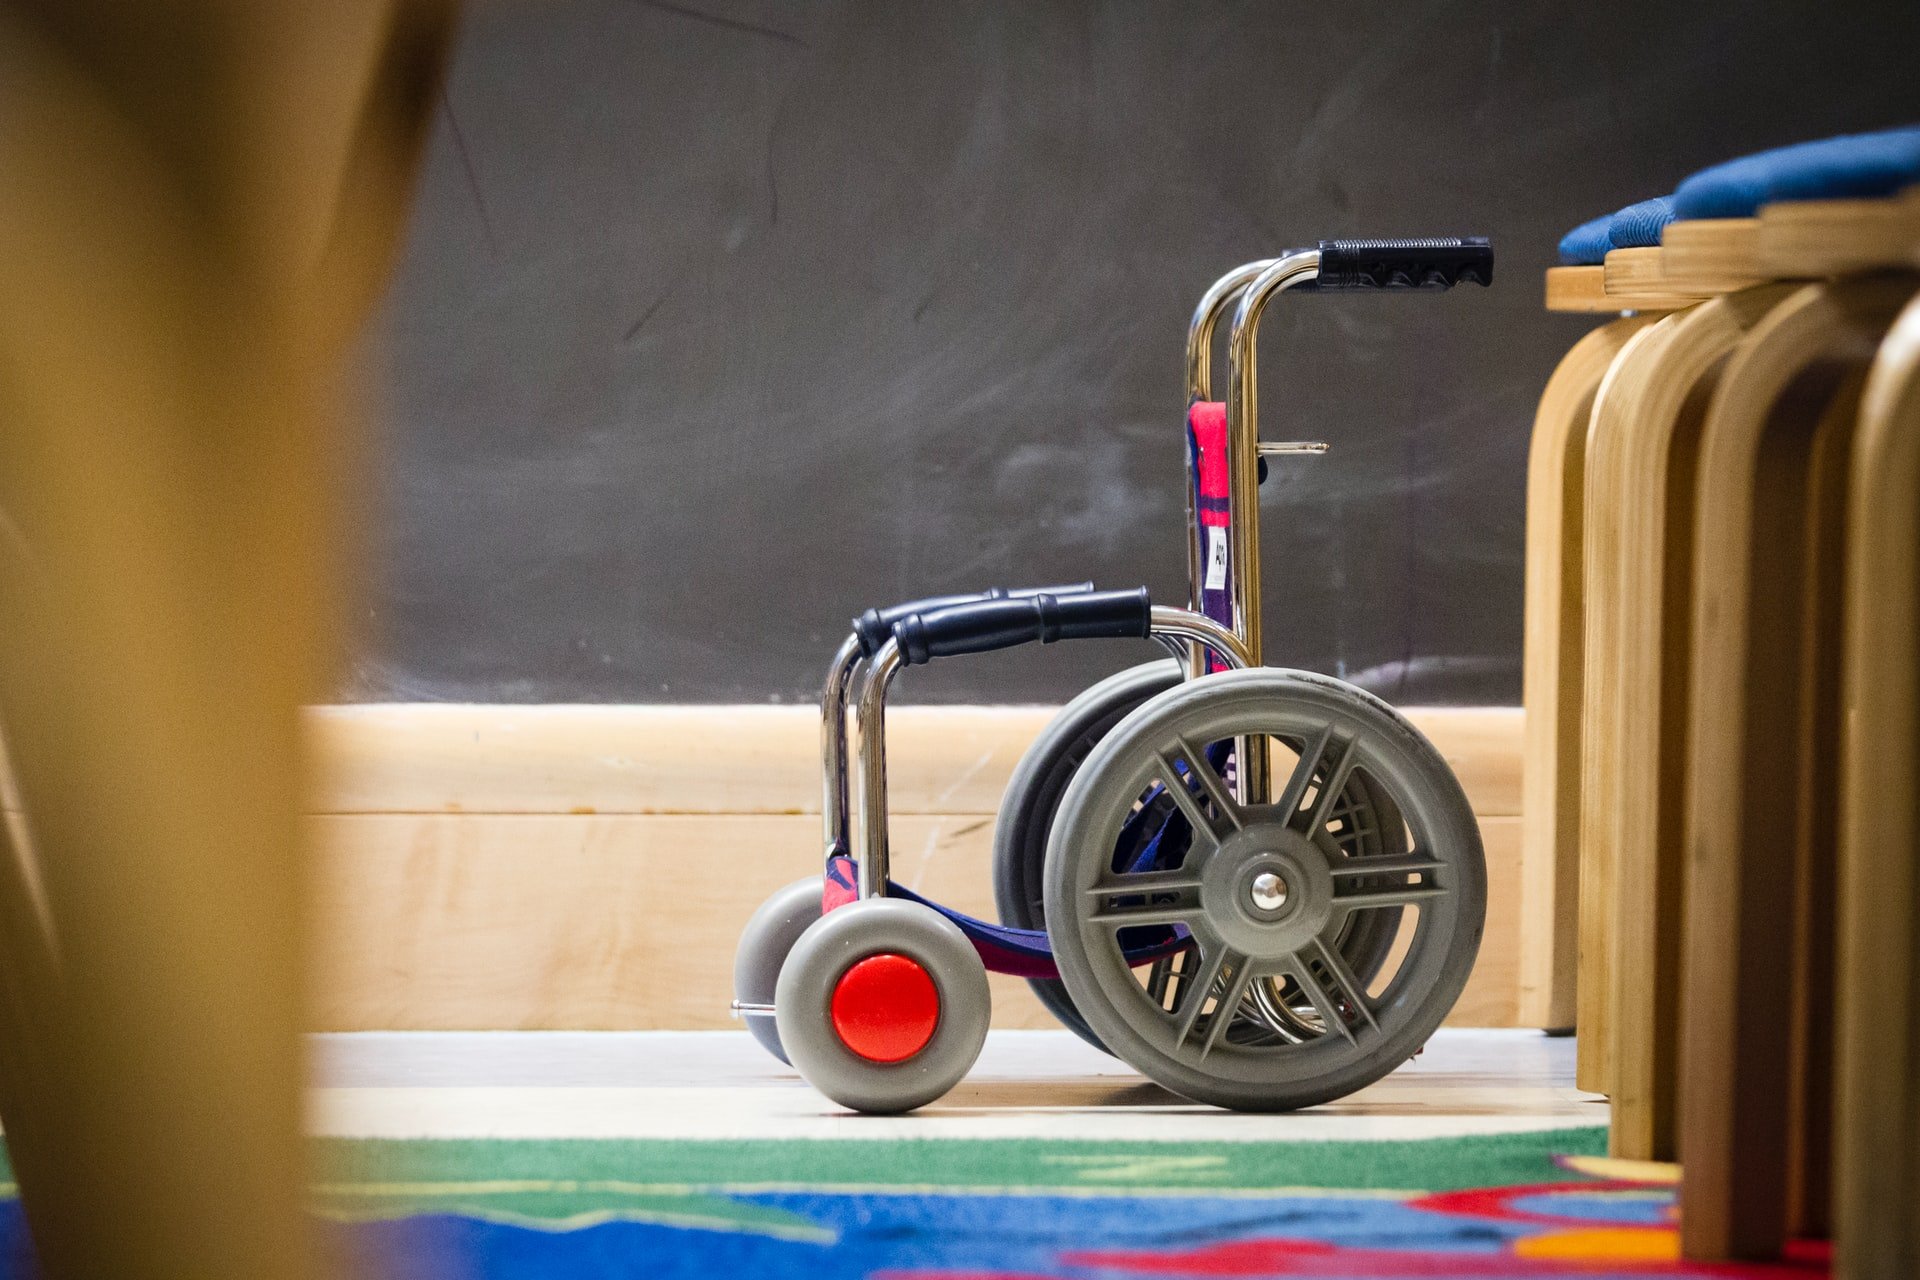 Ohne die Behandlung wäre Mia für den Rest ihres Lebens auf einen Rollstuhl angewiesen. | Quelle: Unsplash